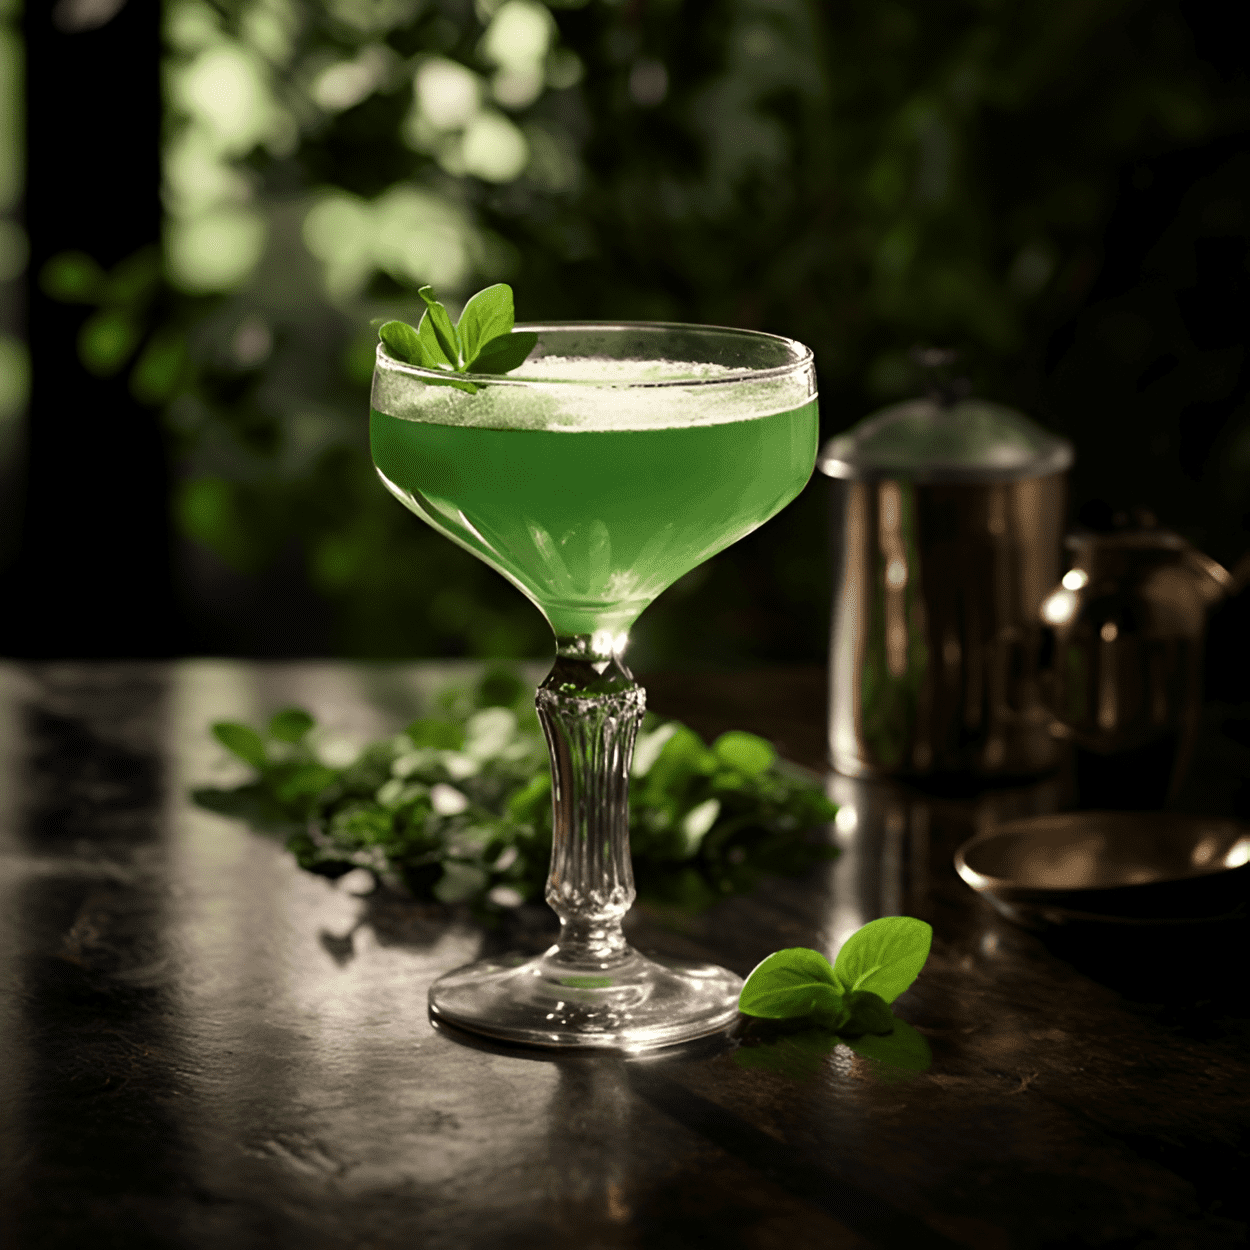 El cóctel Emerald Isle es una bebida refrescante y bien equilibrada con un perfil de sabor ligeramente dulce, herbal y cítrico. La ginebra proporciona una base fuerte y con sabor a enebro, mientras que el crème de menthe verde agrega una dulzura refrescante y mentolada. Los bitters y el jugo de limón aportan un toque de amargor y acidez para redondear el sabor.